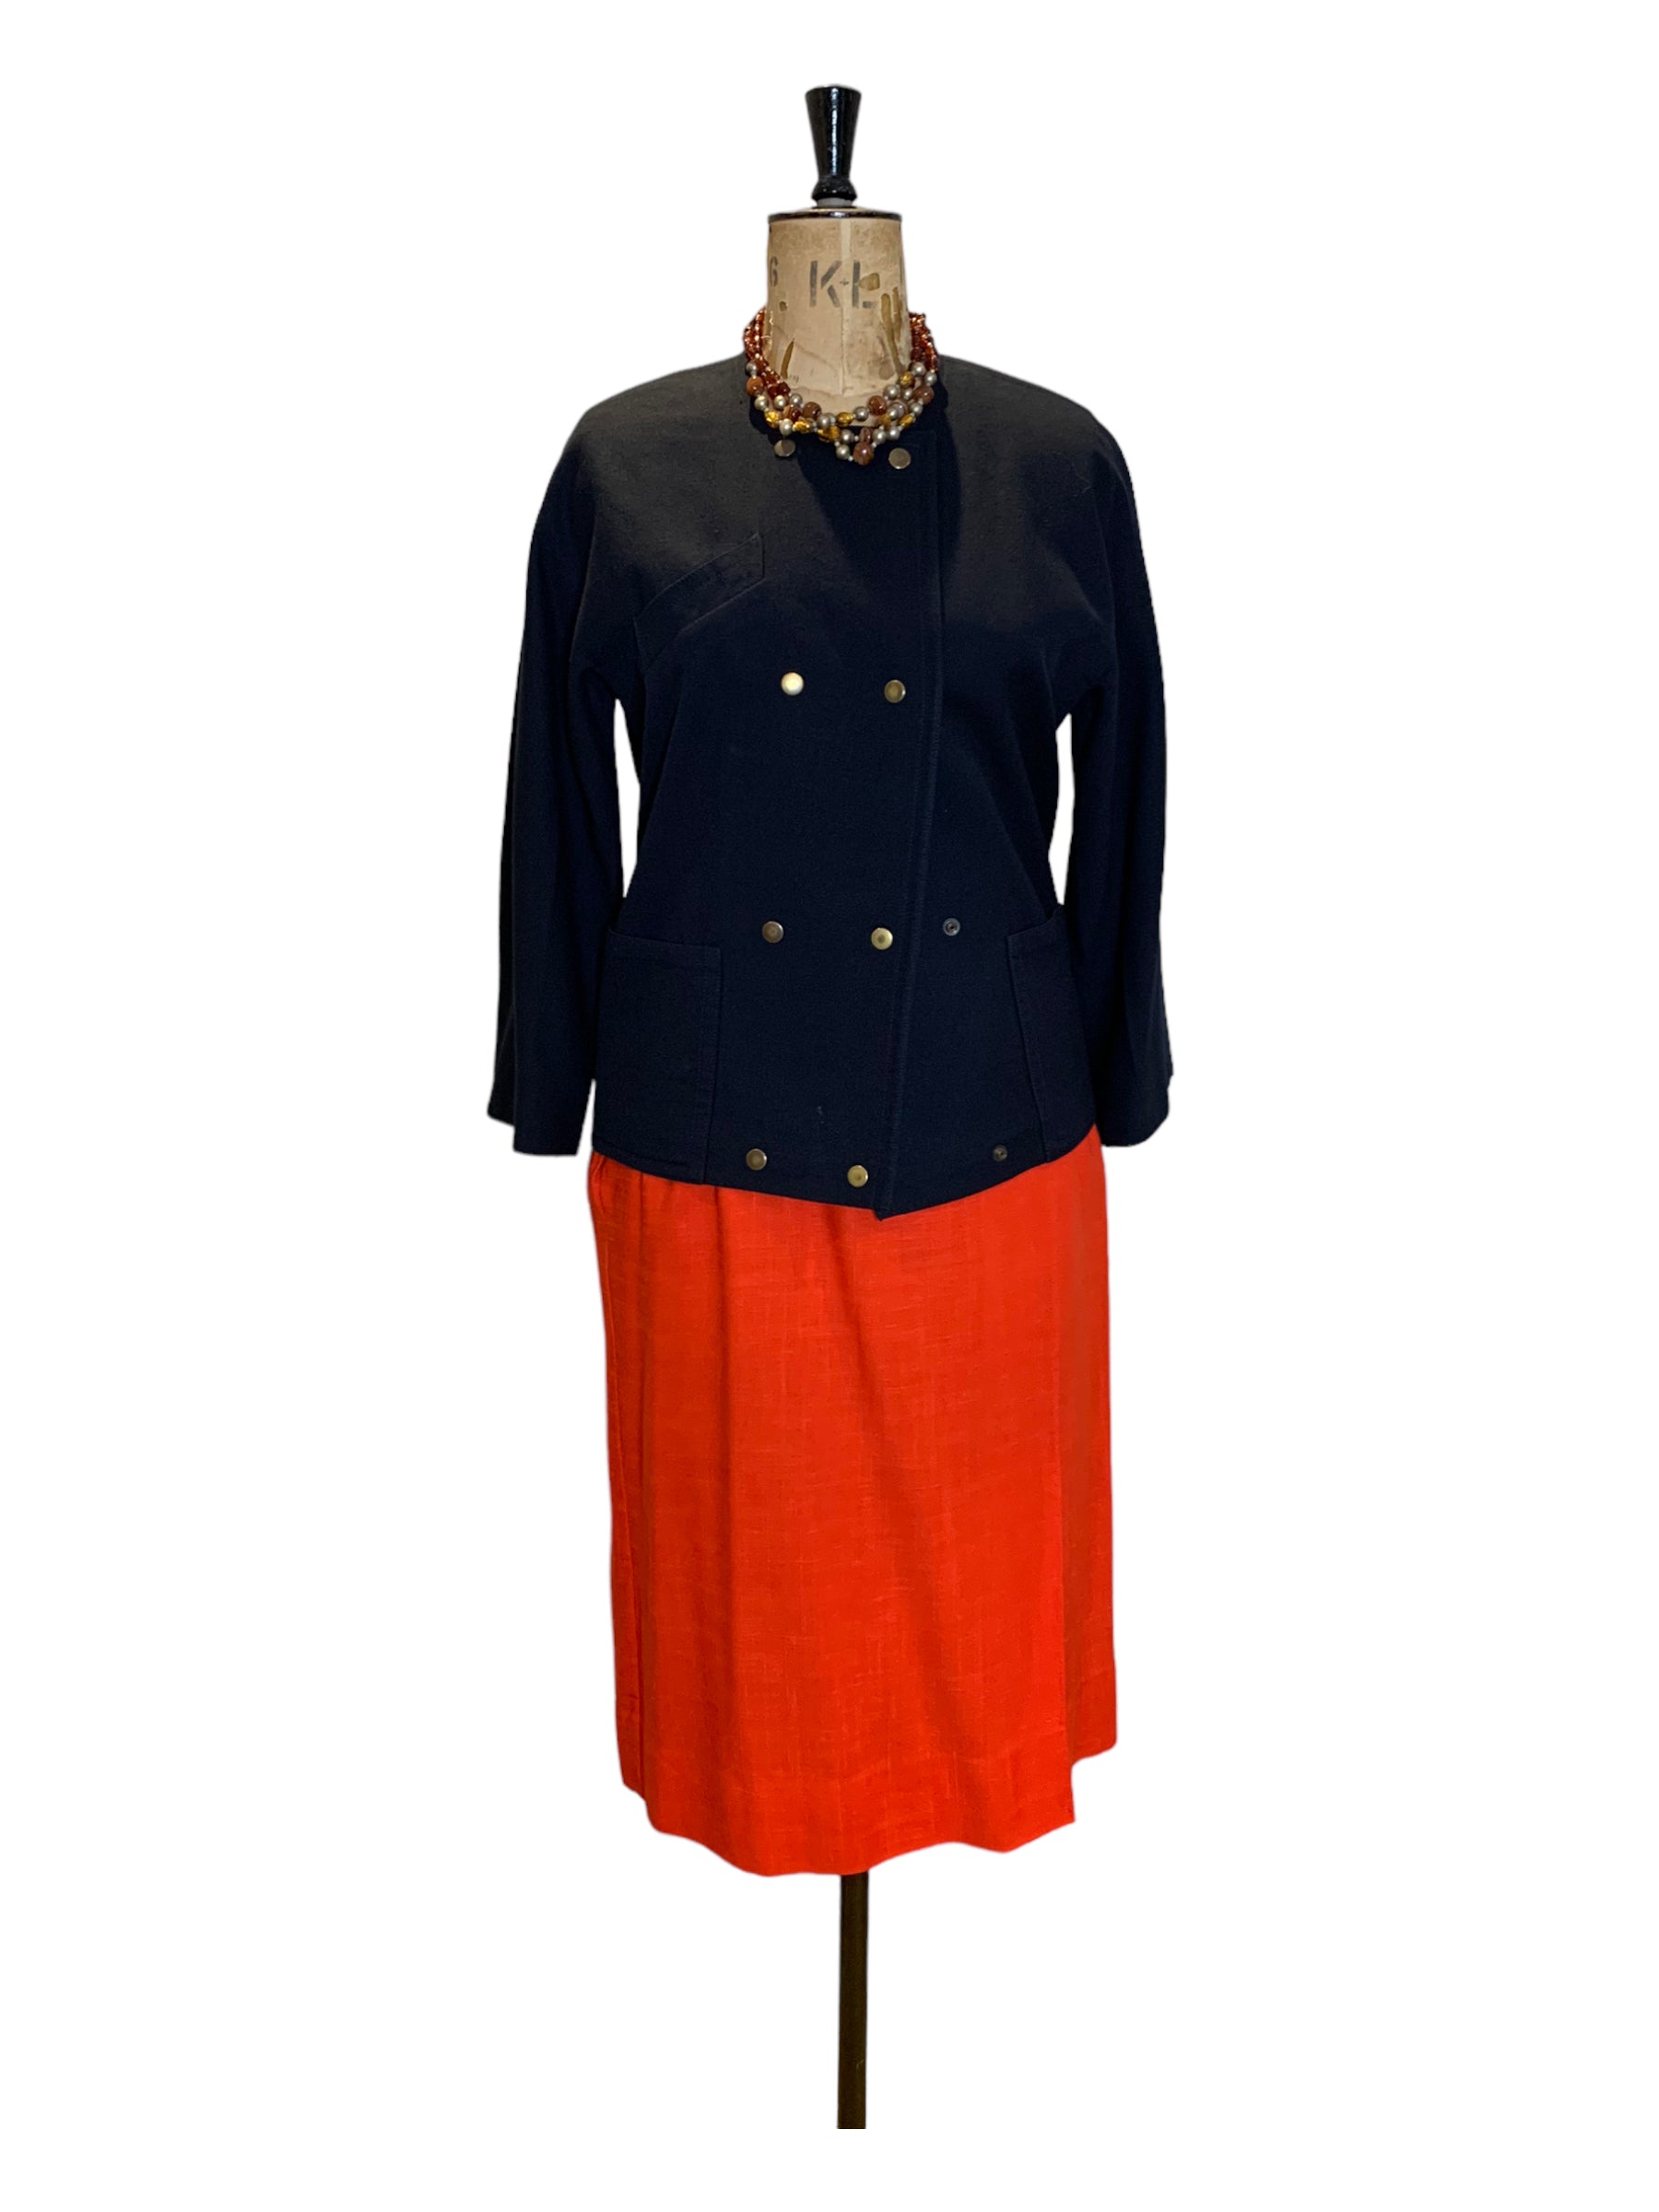 8os Vintage Irish Navy Wool Jacket Size UK 12